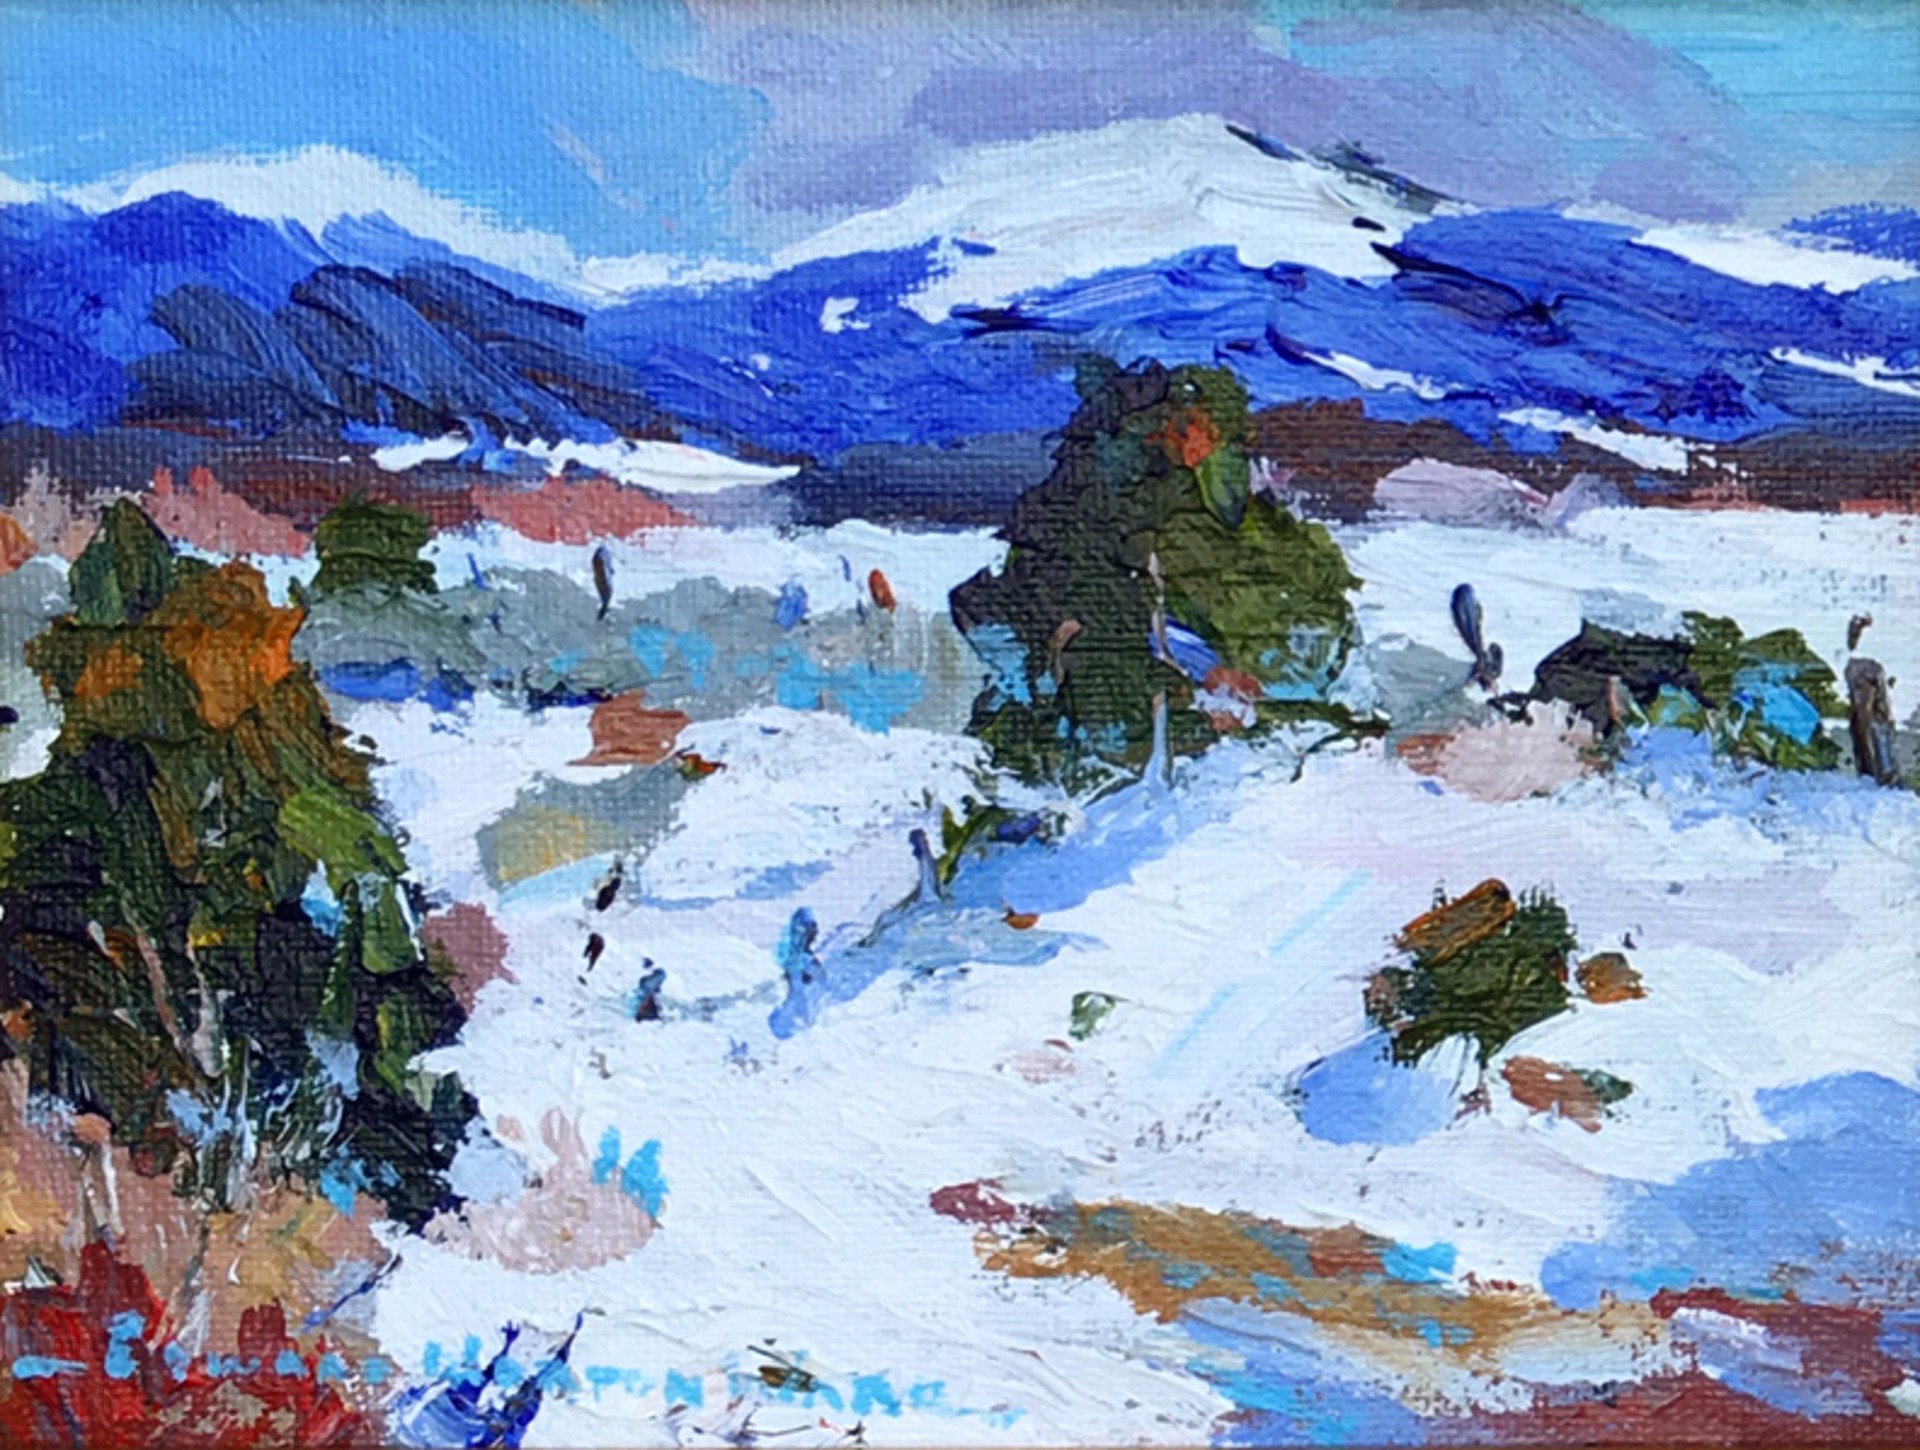 Trucha Peak by Edward Norton Ward